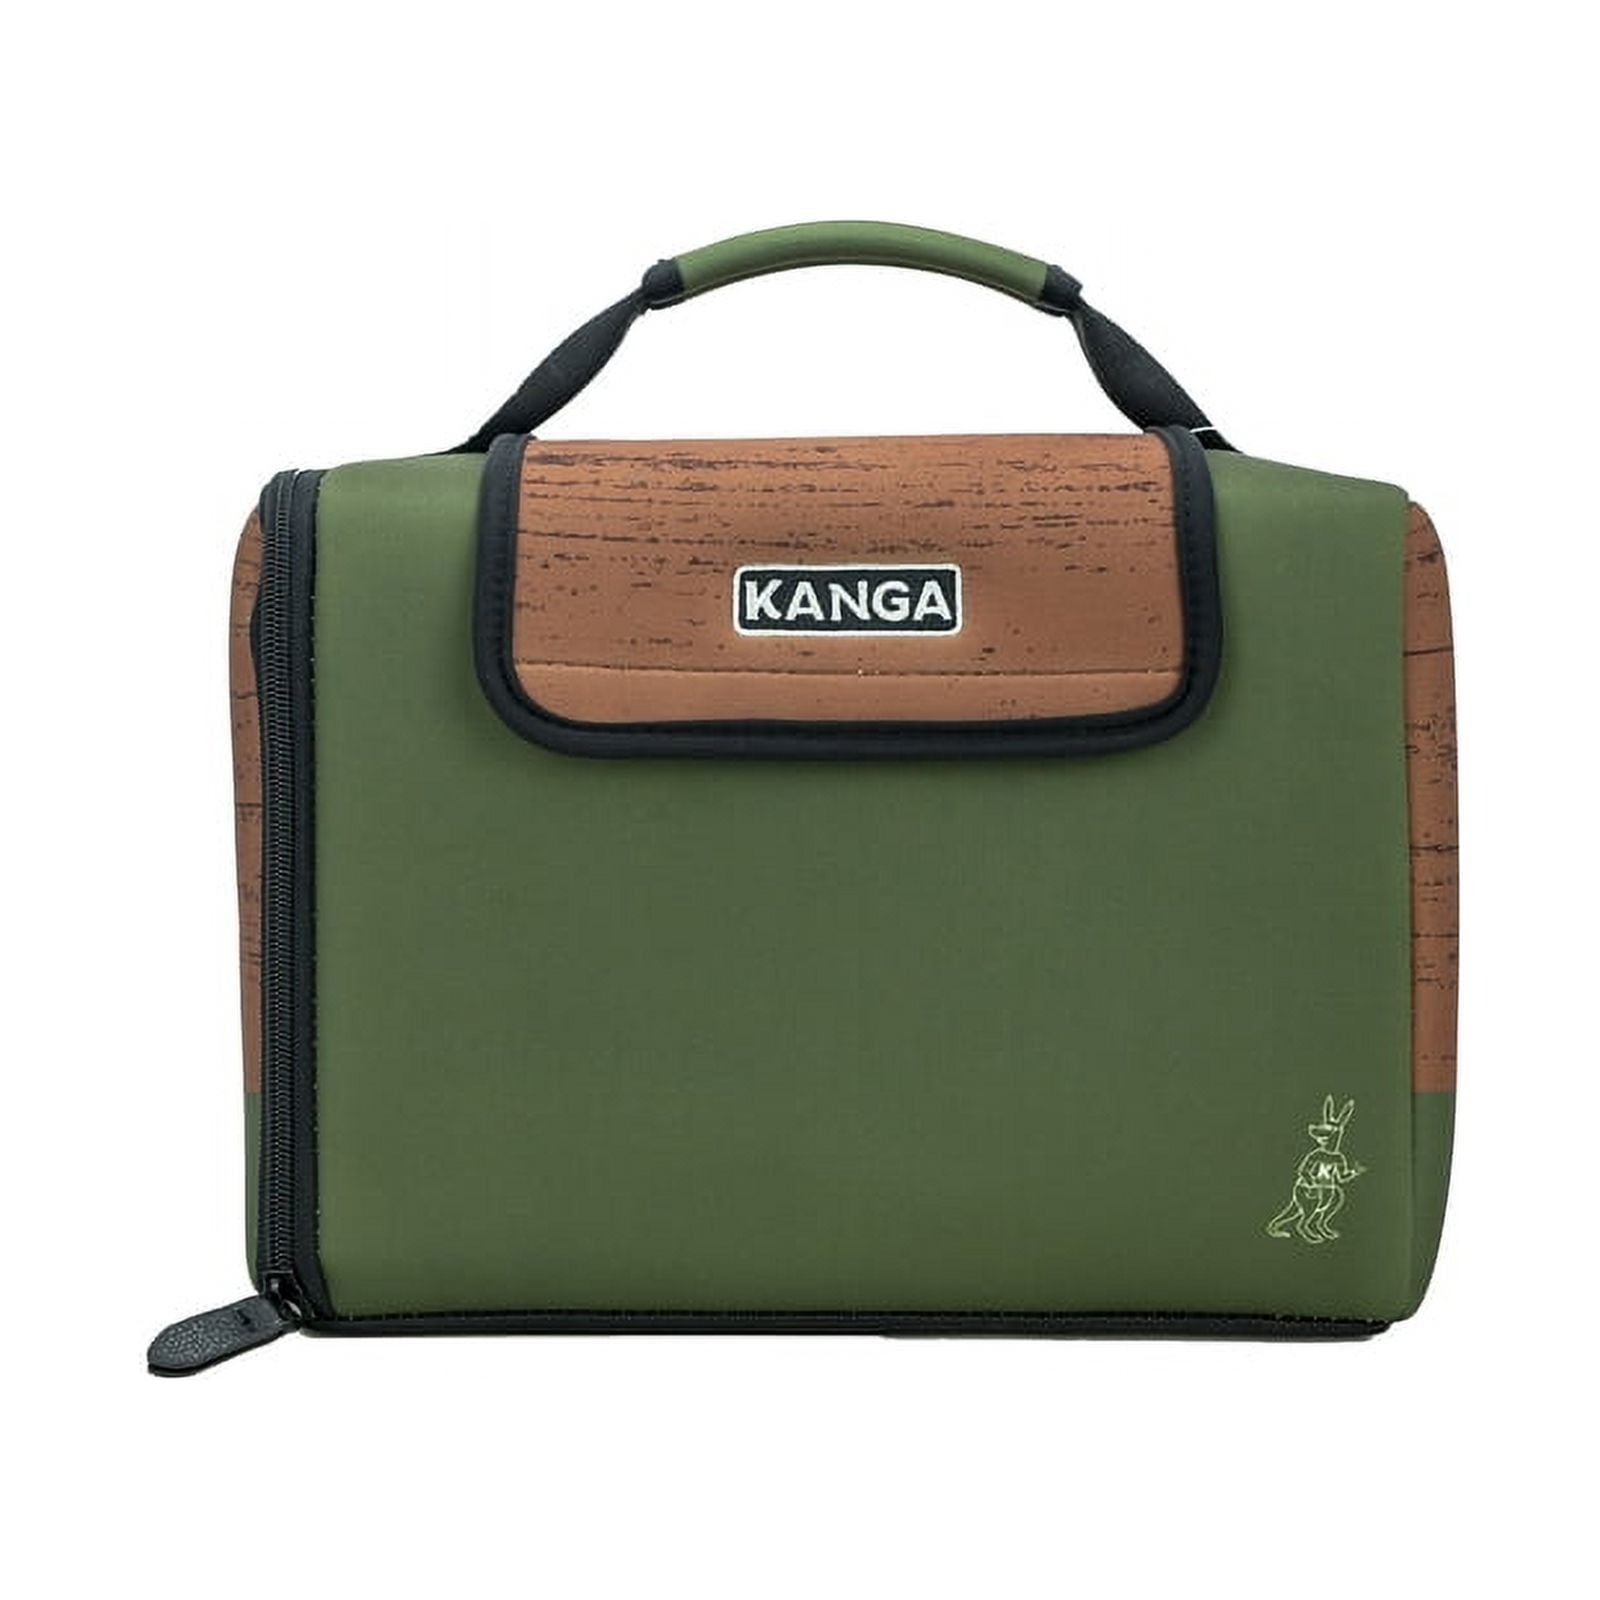  Kanga Insulated Cooler Bag - Soft Cooler Bag - 12 Pack